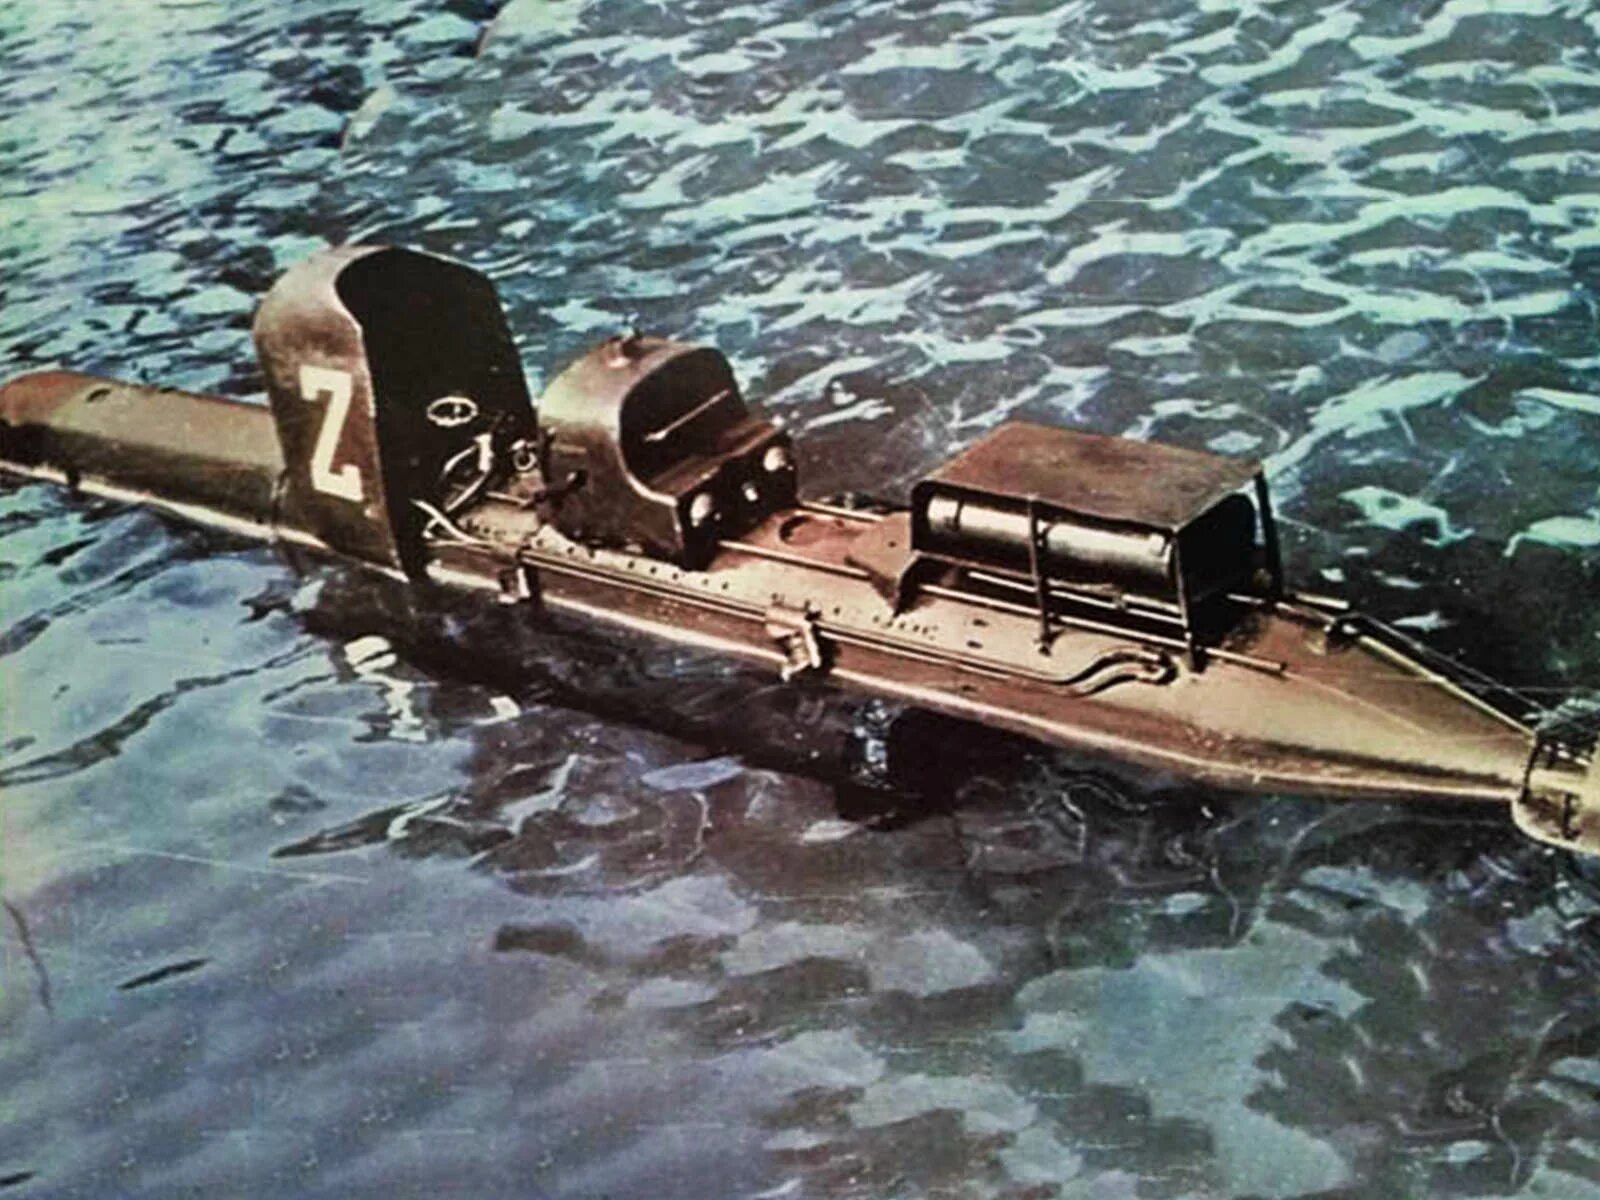 Управляемые торпеды. Управляемые торпеды второй мировой войны. Итальянские торпеды управляемые пловцами. Сверхмалые подводные лодки второй мировой войны. Итальянские боевые пловцы во второй мировой войне.